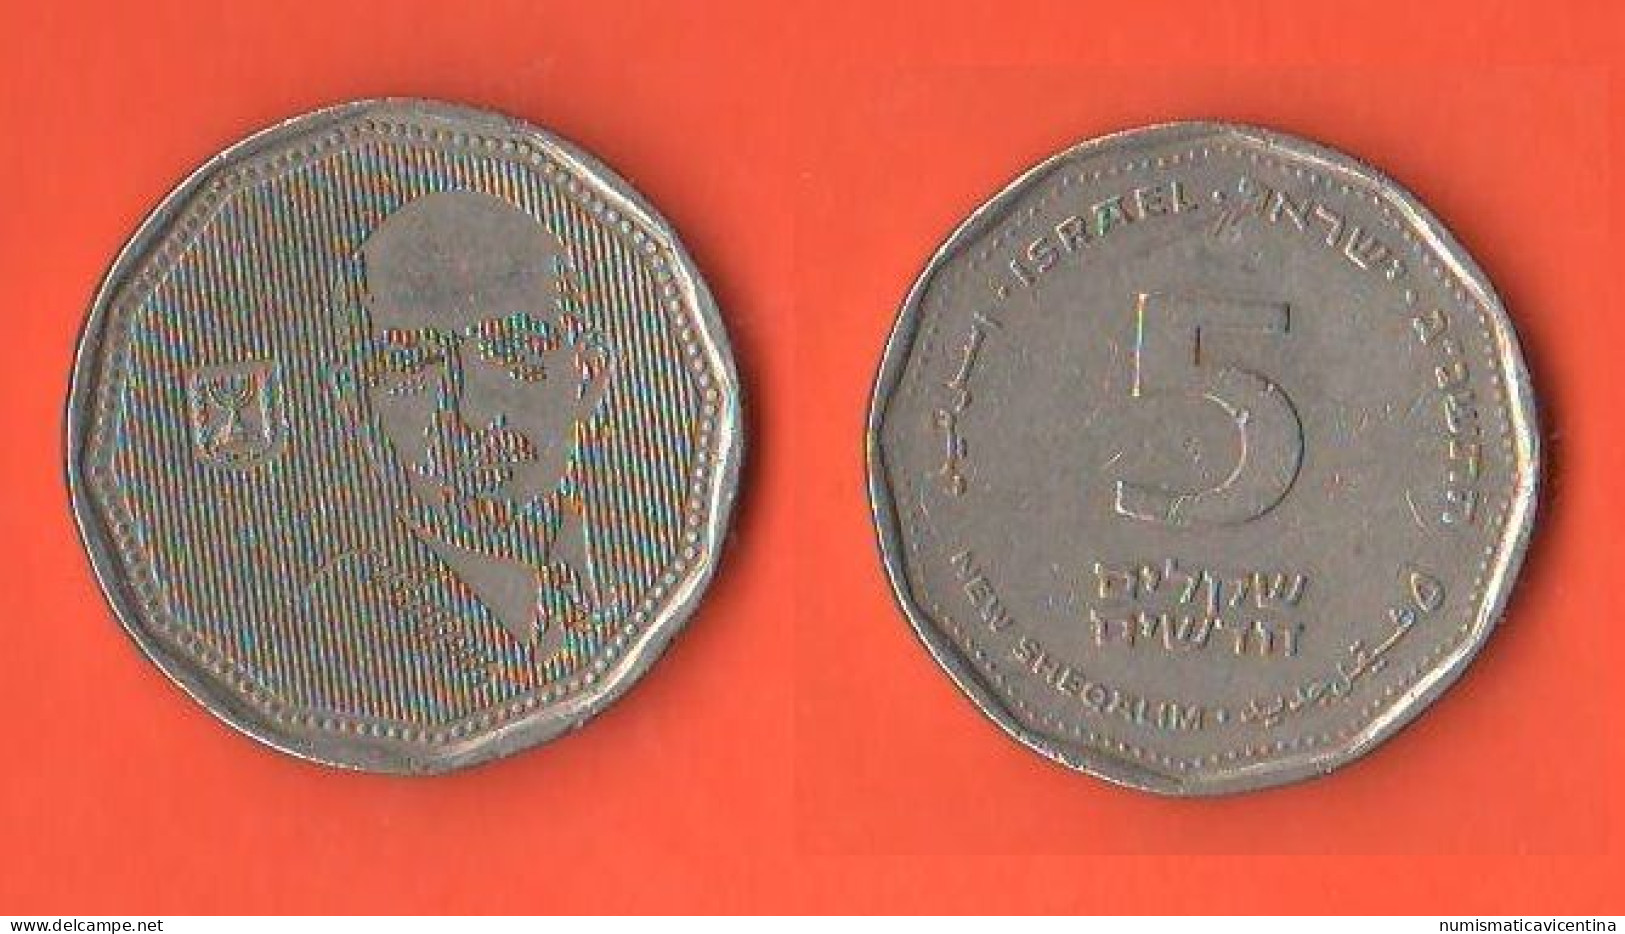 Israele 5 New Sheqalim 1992 Israel  Chaim Weizmann Nickel Coin - Israele